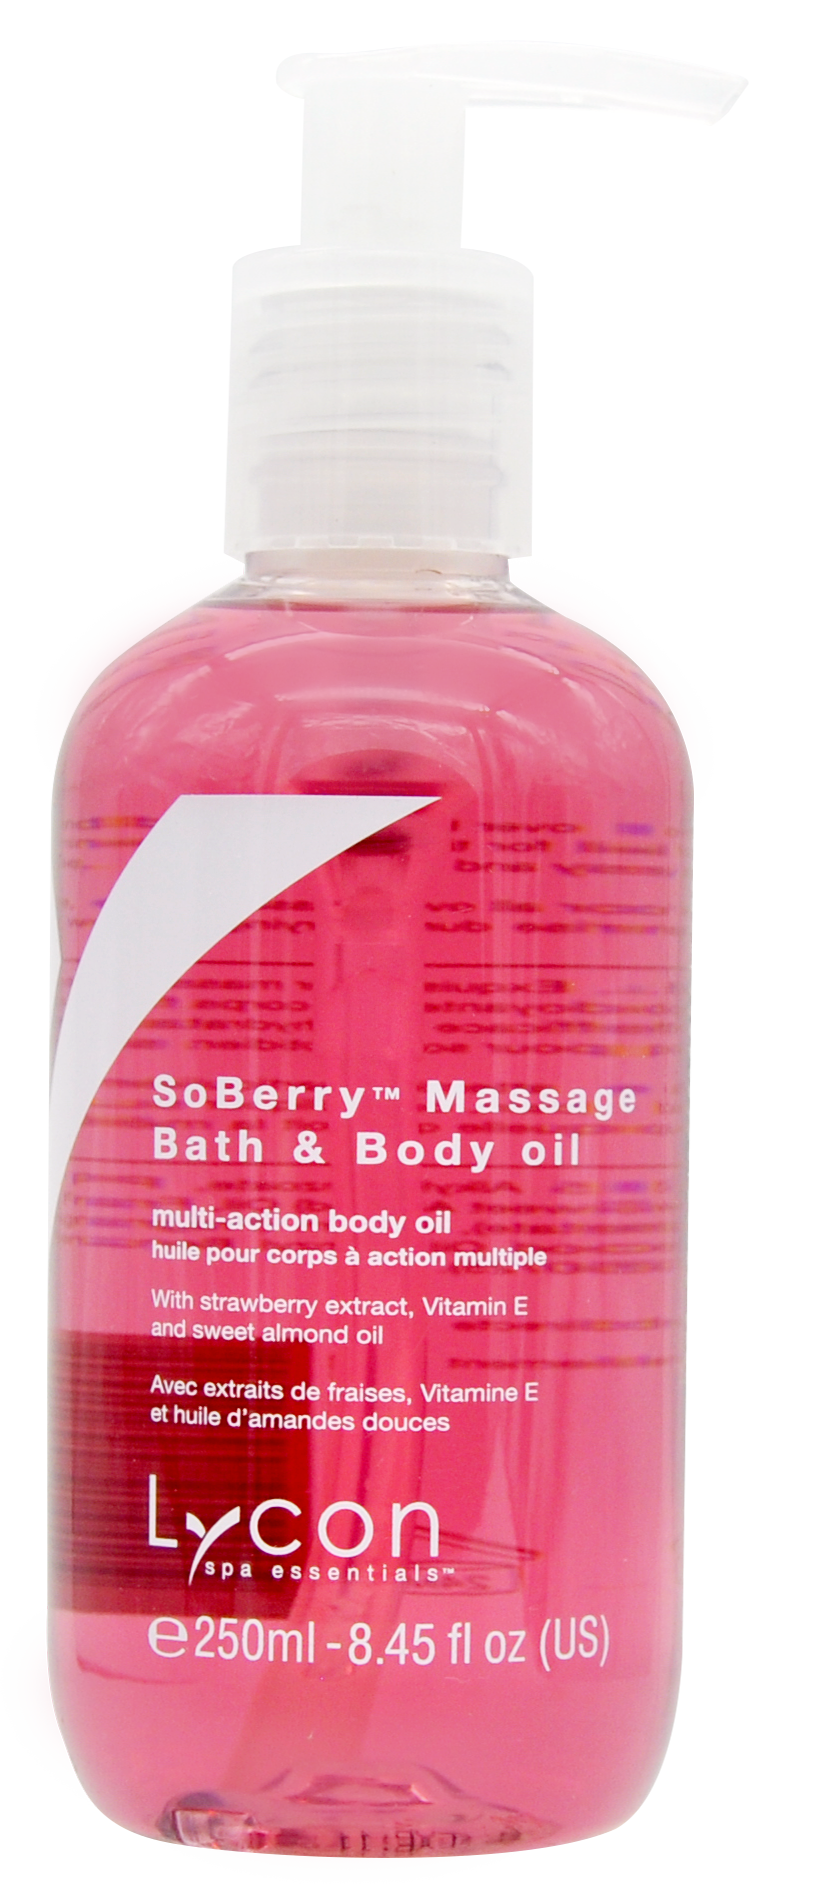 SoBerry Massgae, Bath & Body Oil